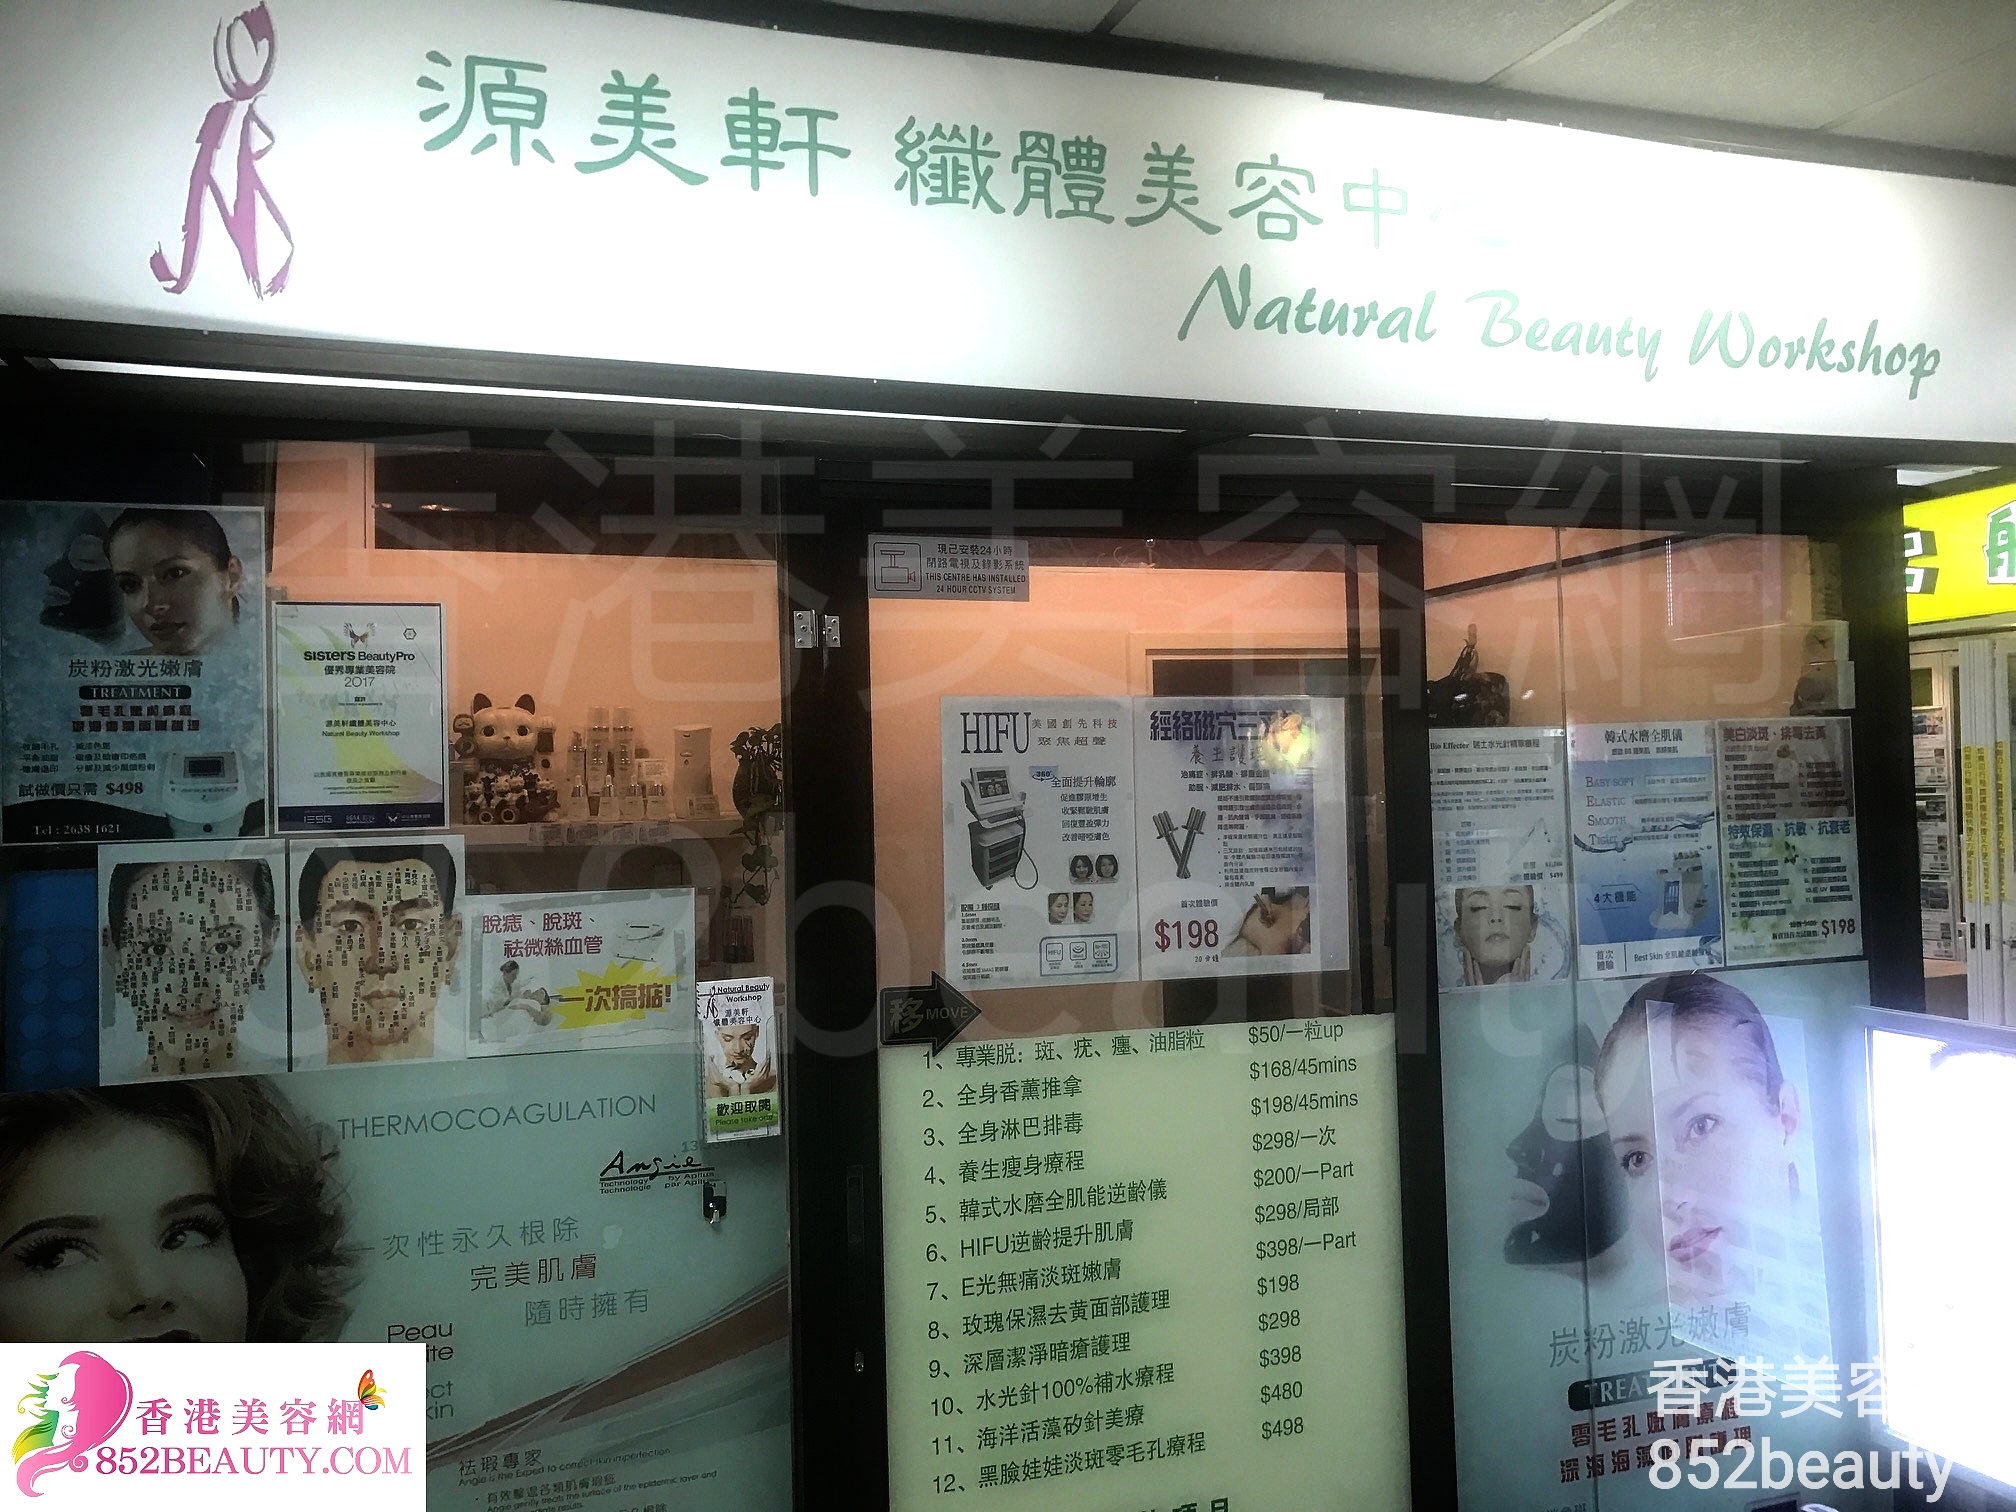 香港美容網 Hong Kong Beauty Salon 美容院 / 美容師: 源美軒纖體美容中心 Natural Beauty Workshop